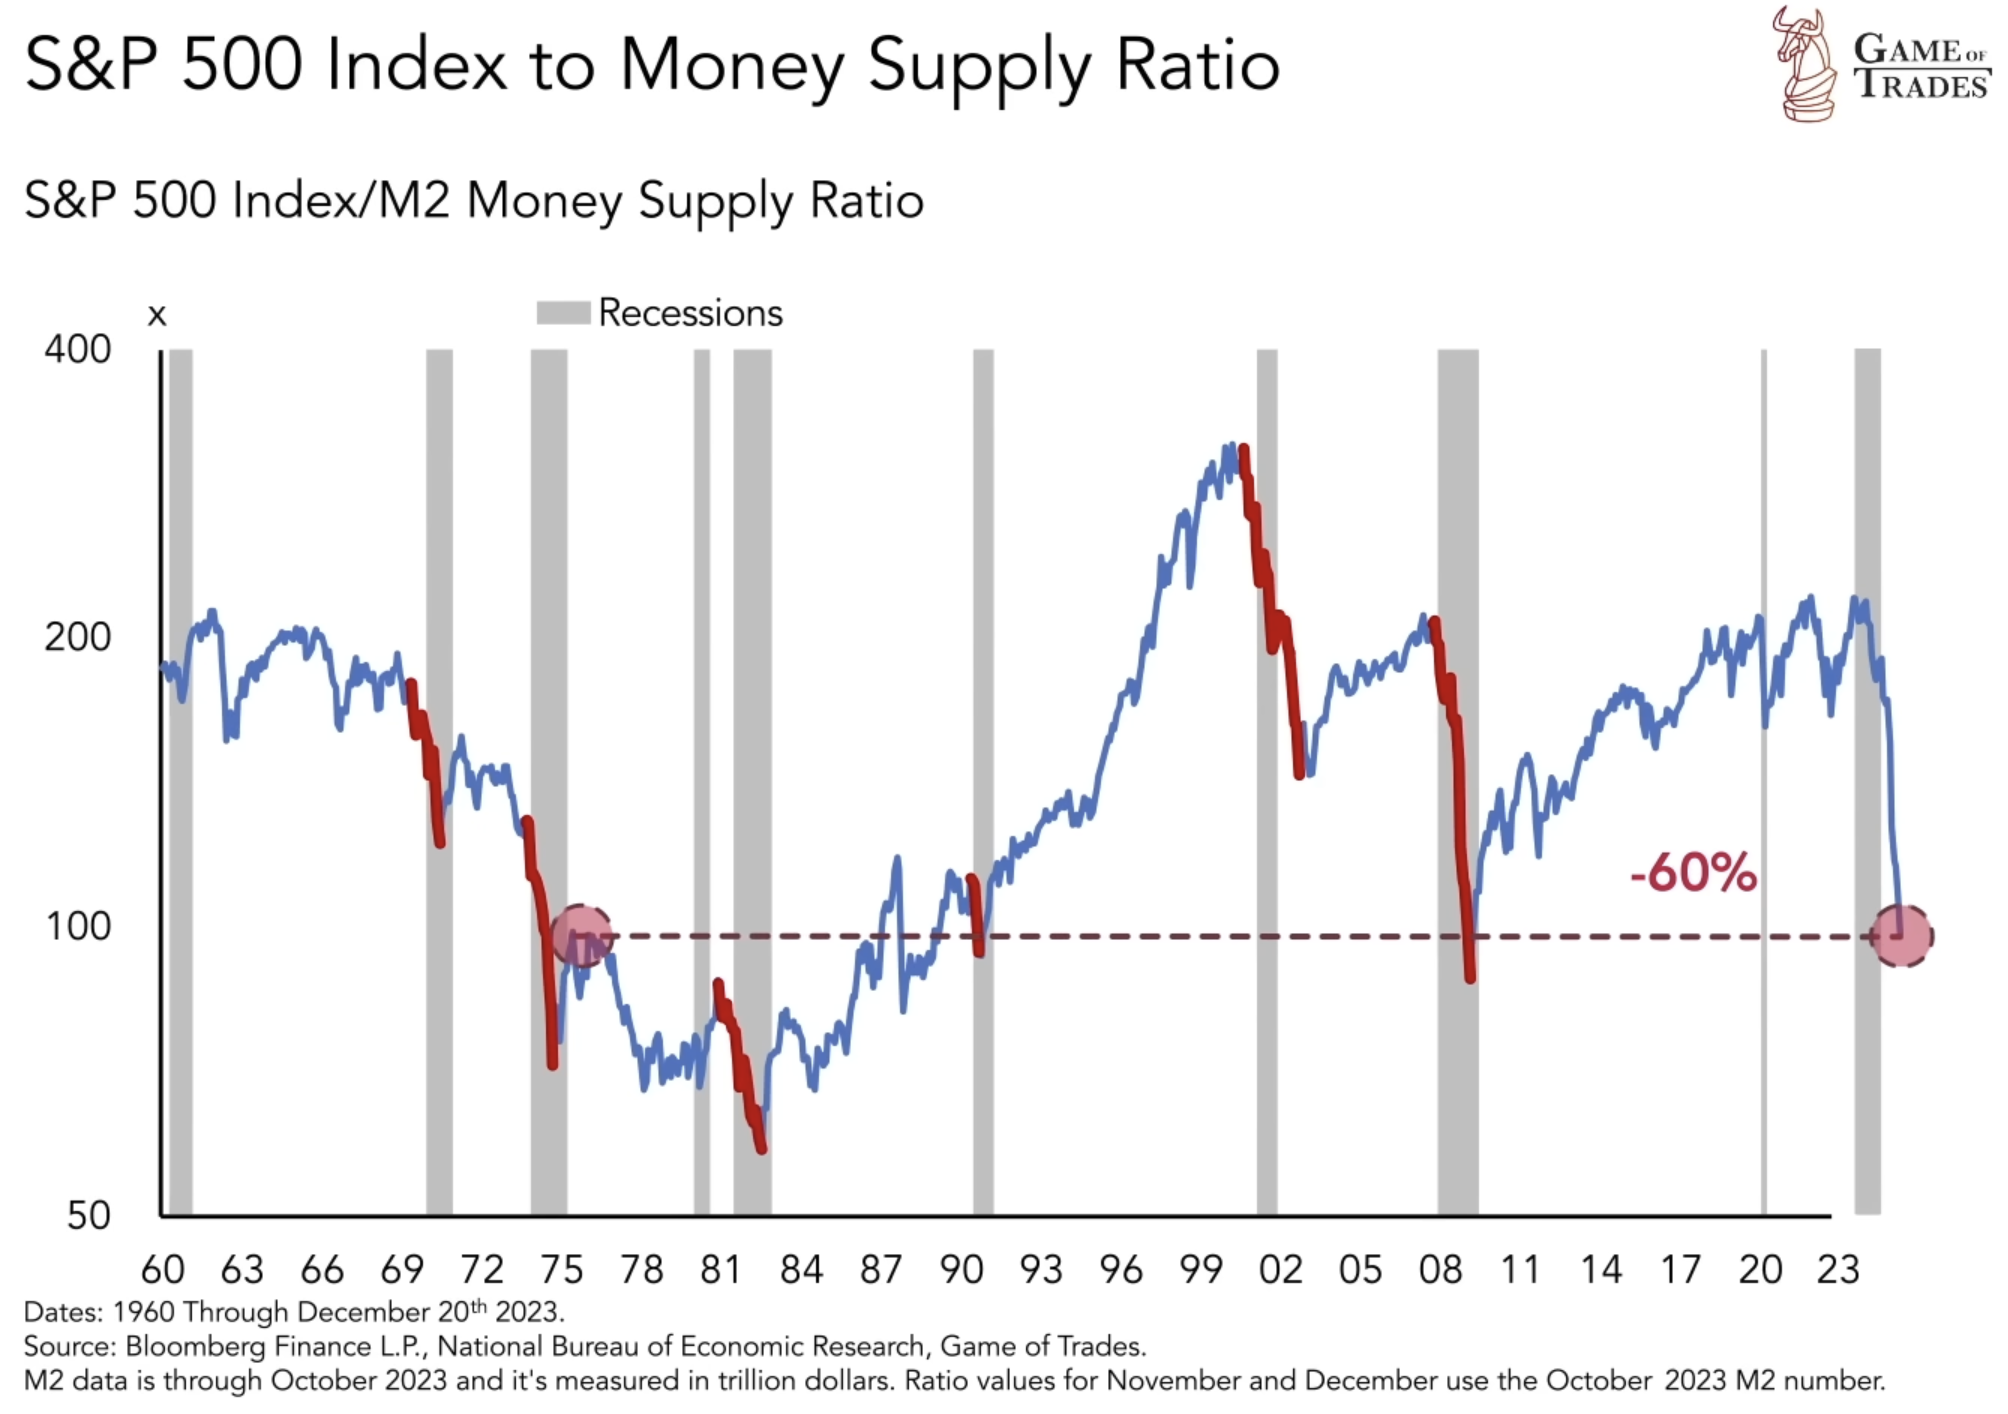 S&P 500 Index M2 Money supply ratio